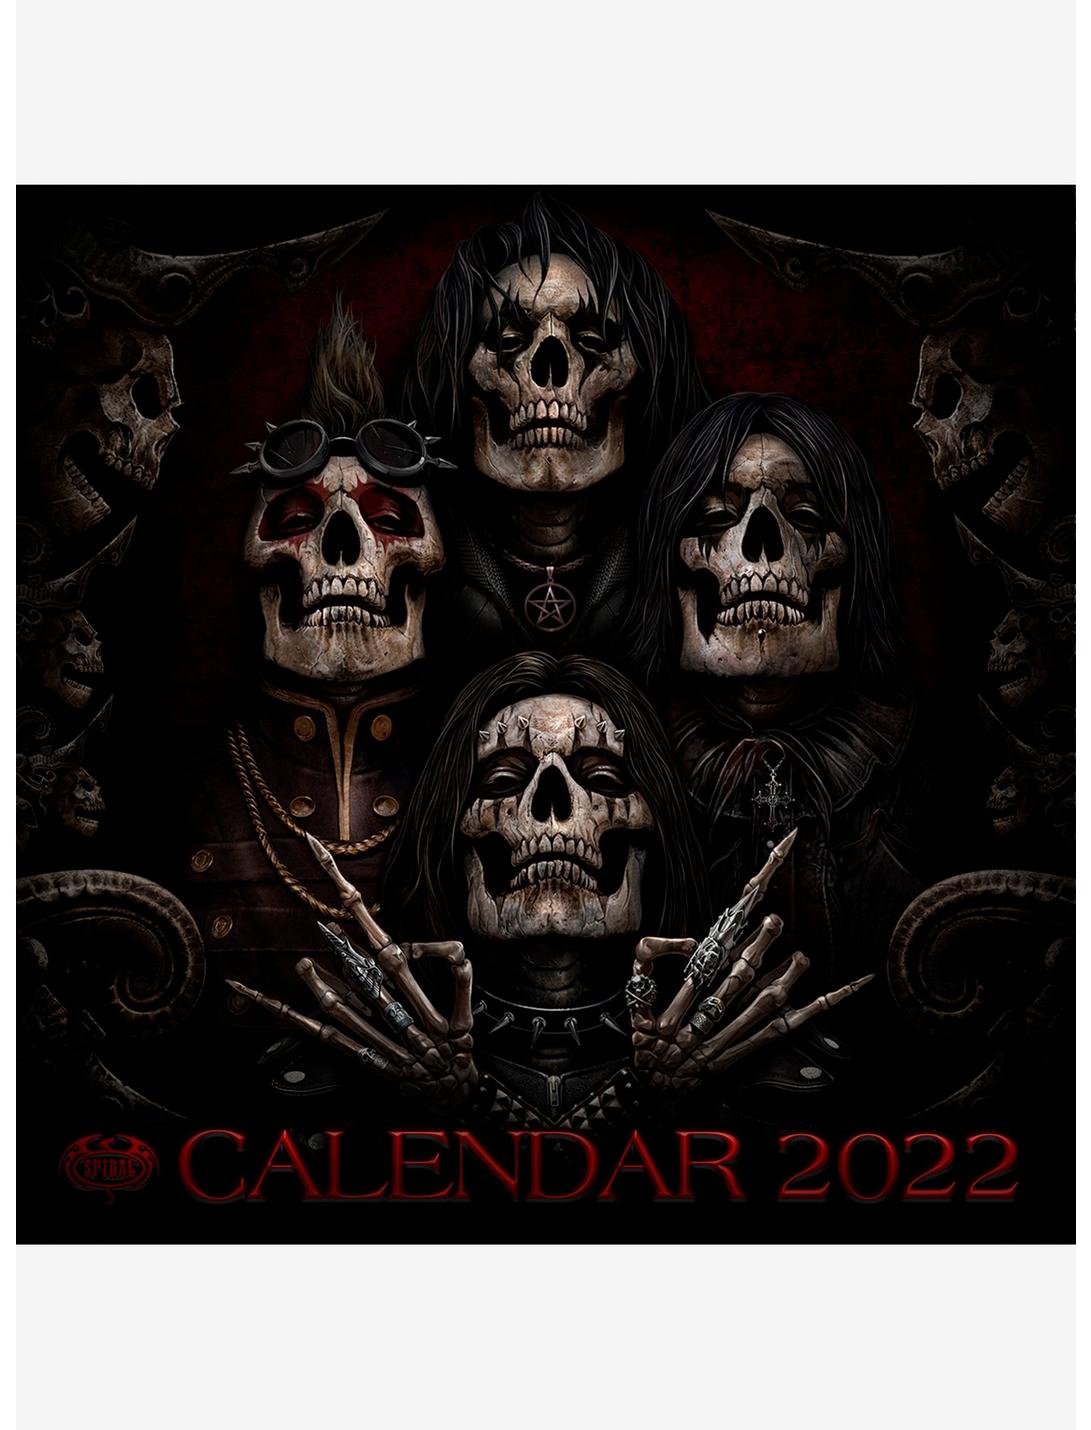 Dark Arts 2022 Calendar, , hi-res